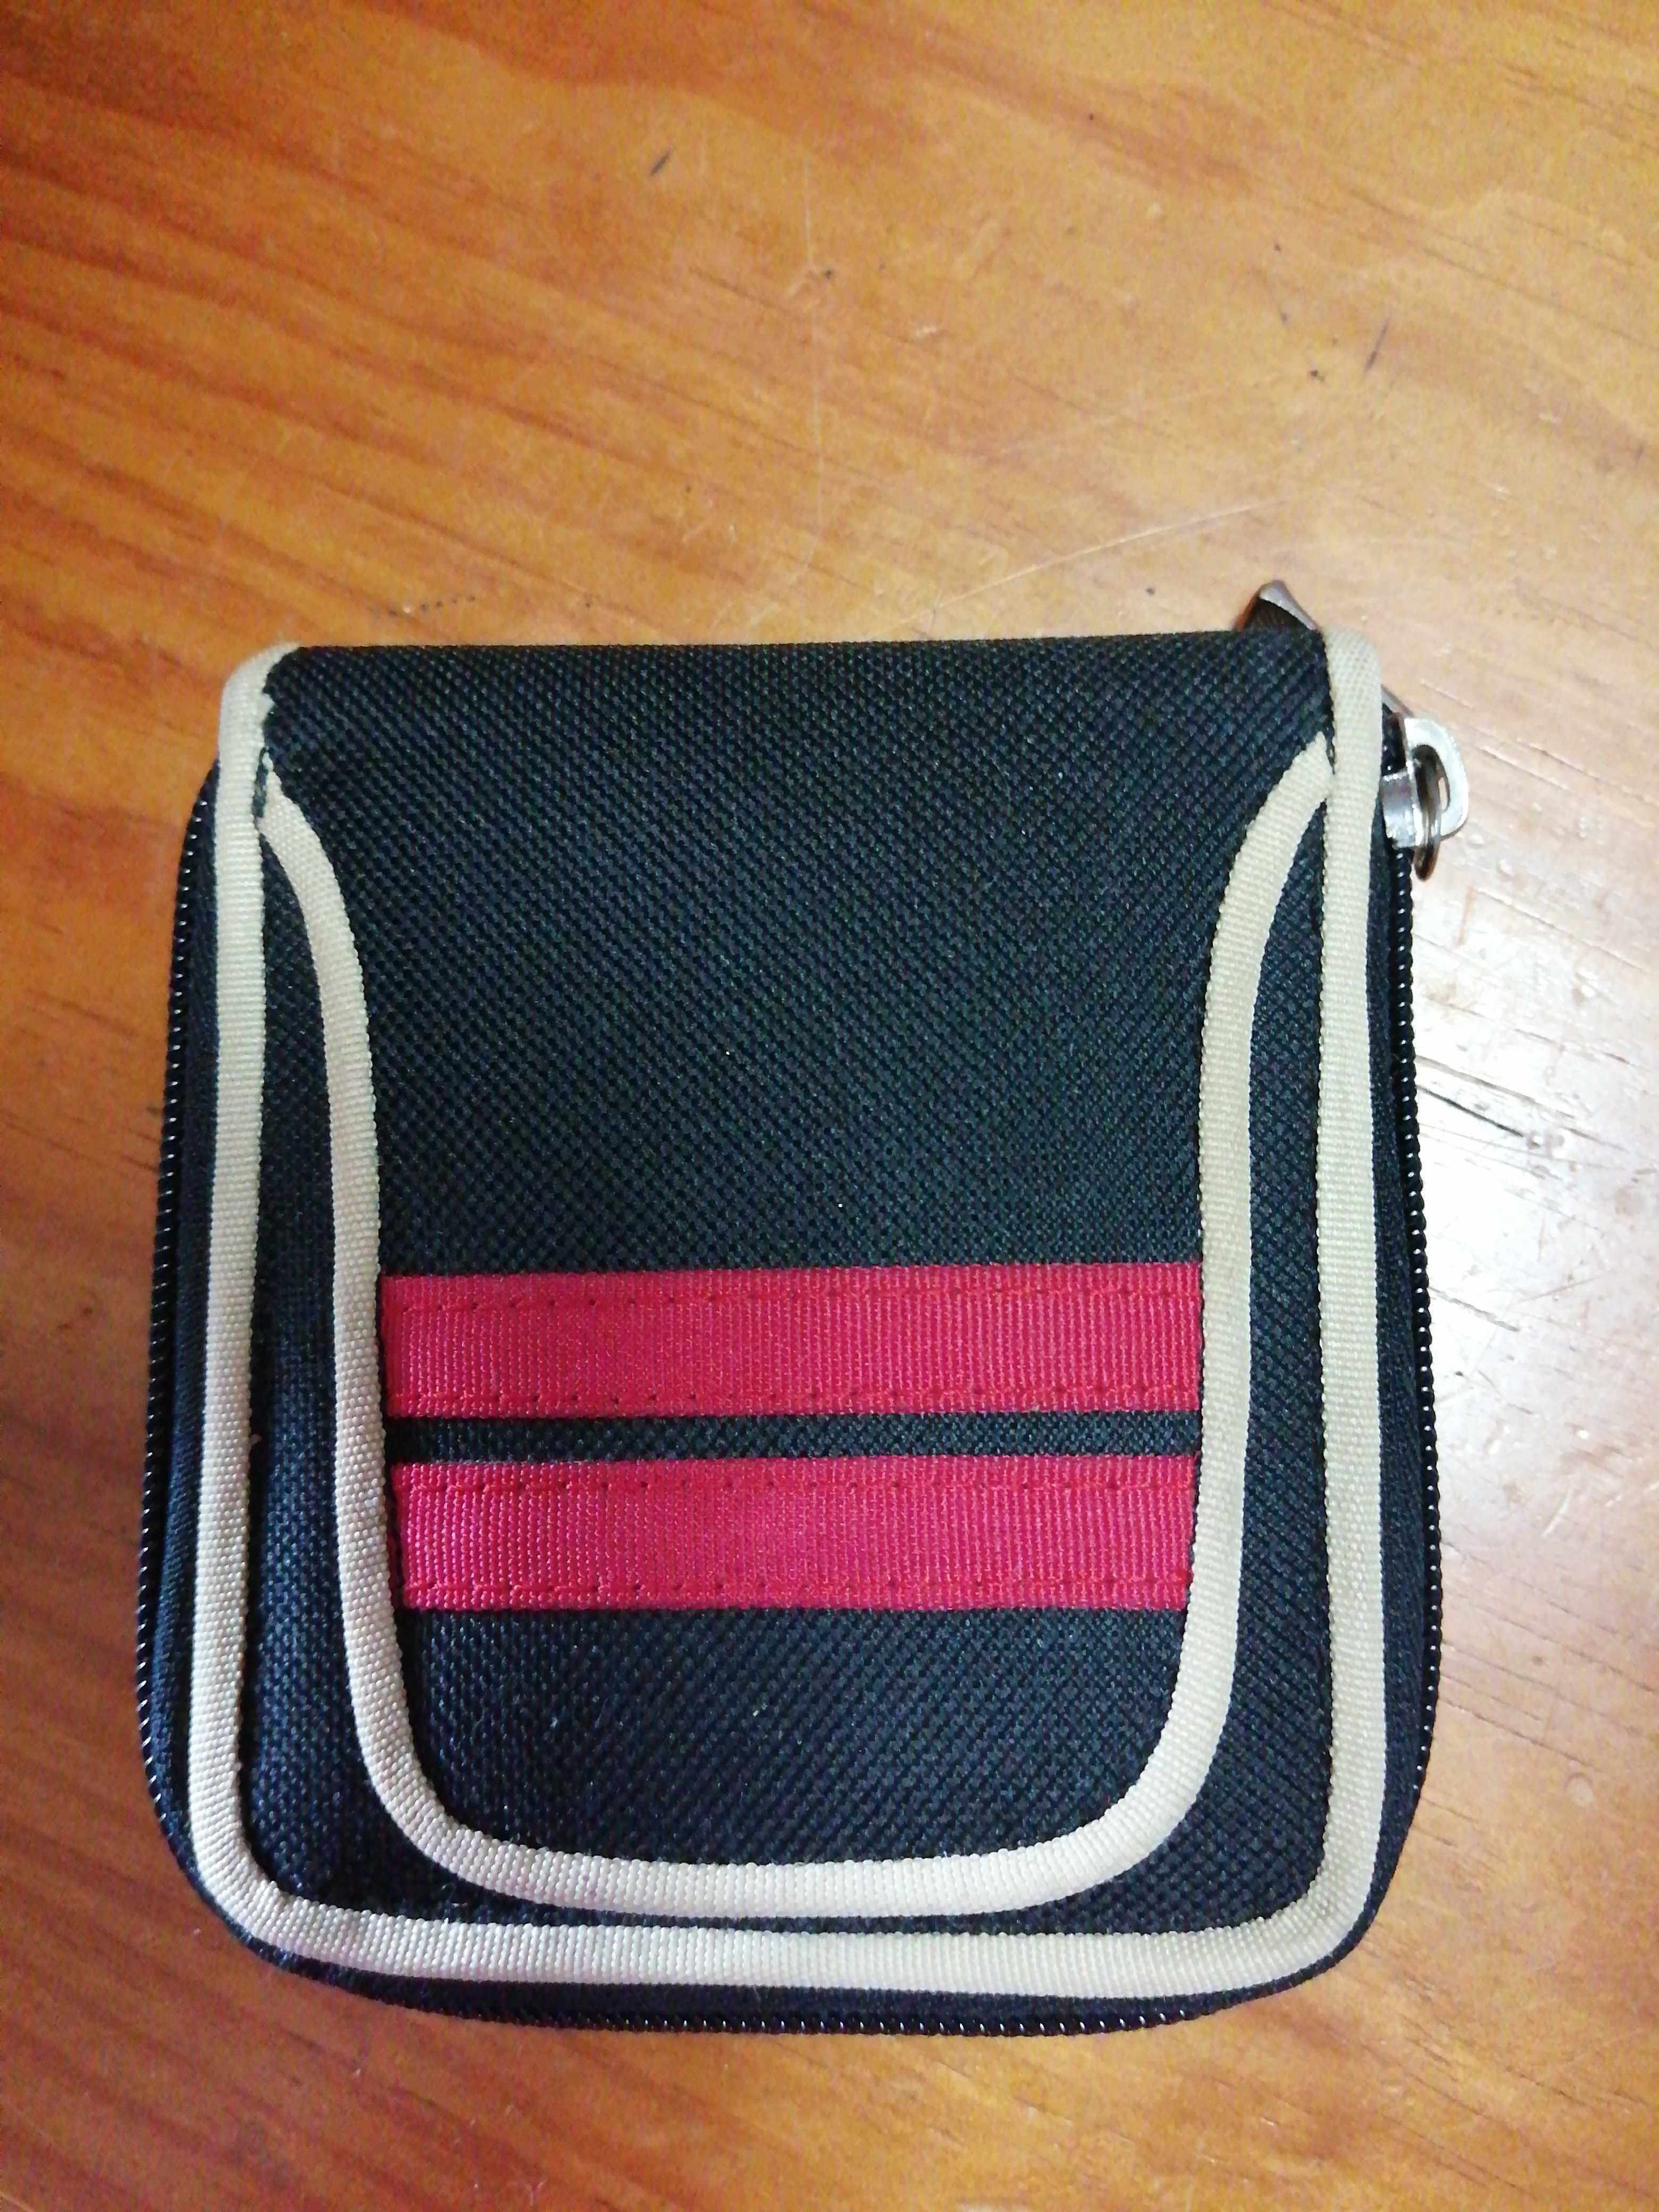 Carteira bolso preto e vermelho.